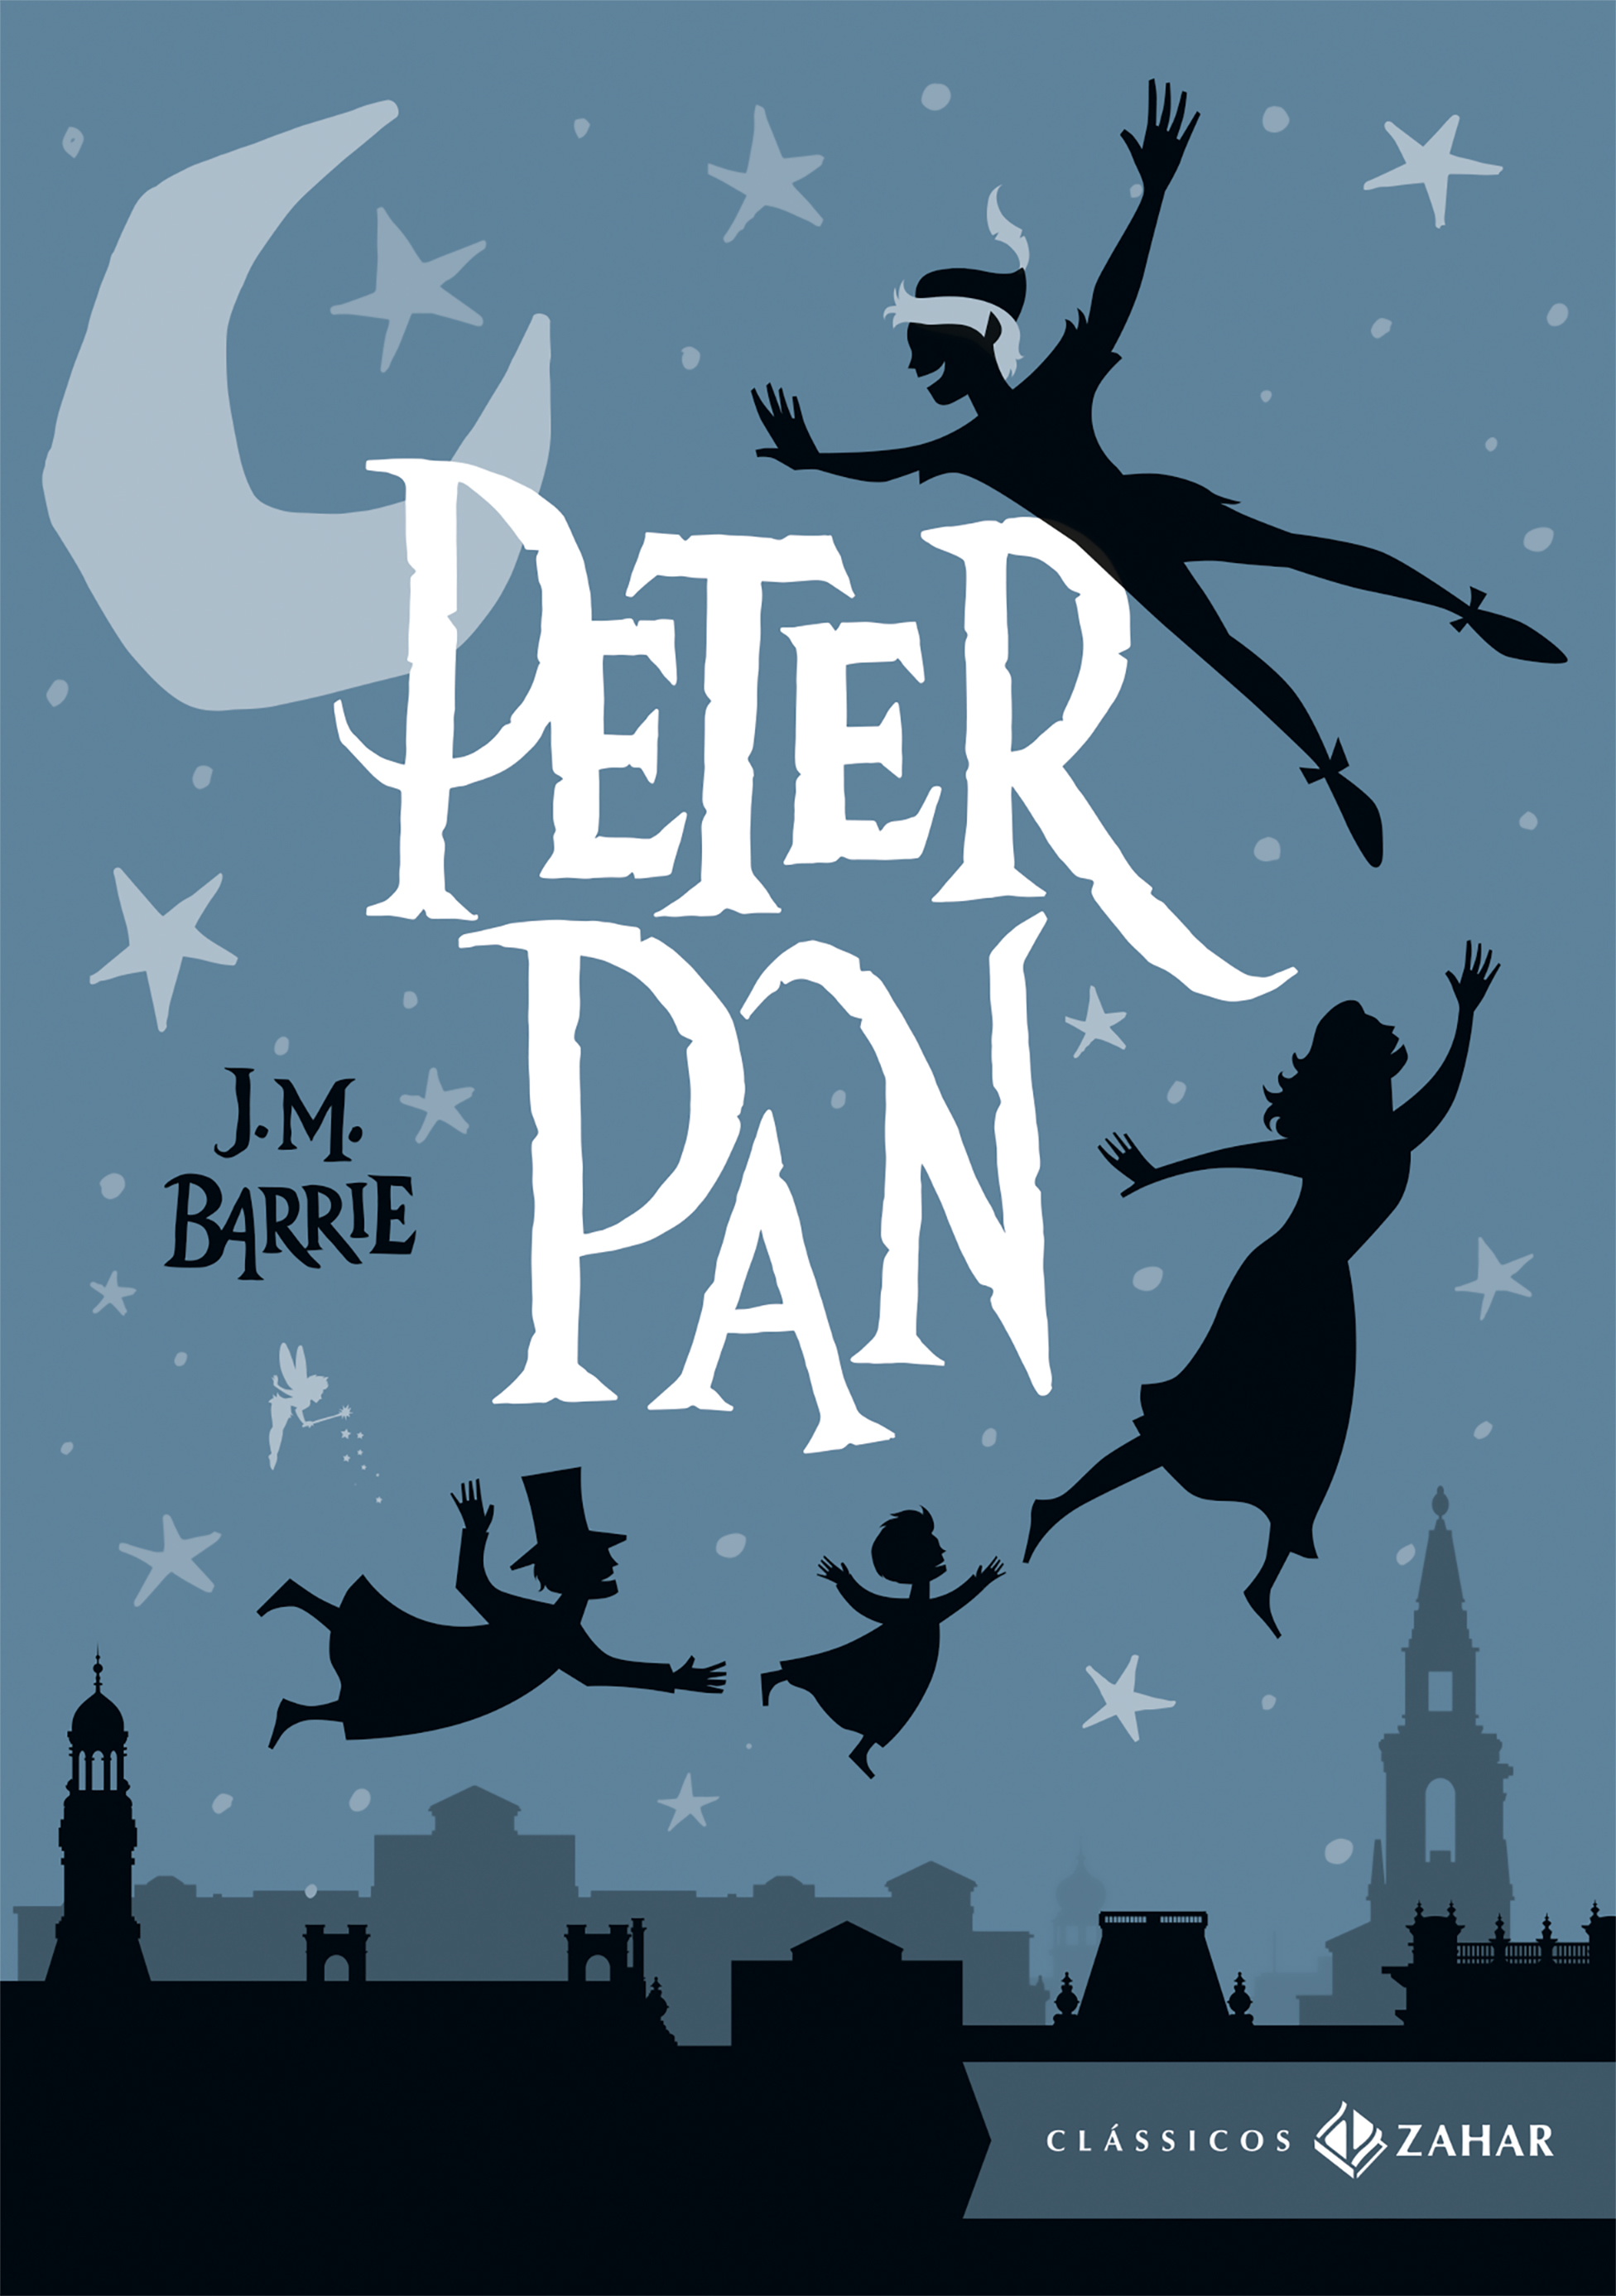 Пэн английский. Peter Pan книга. Питер Пэн книга на английском обложка. Обложка книги Питер пен.